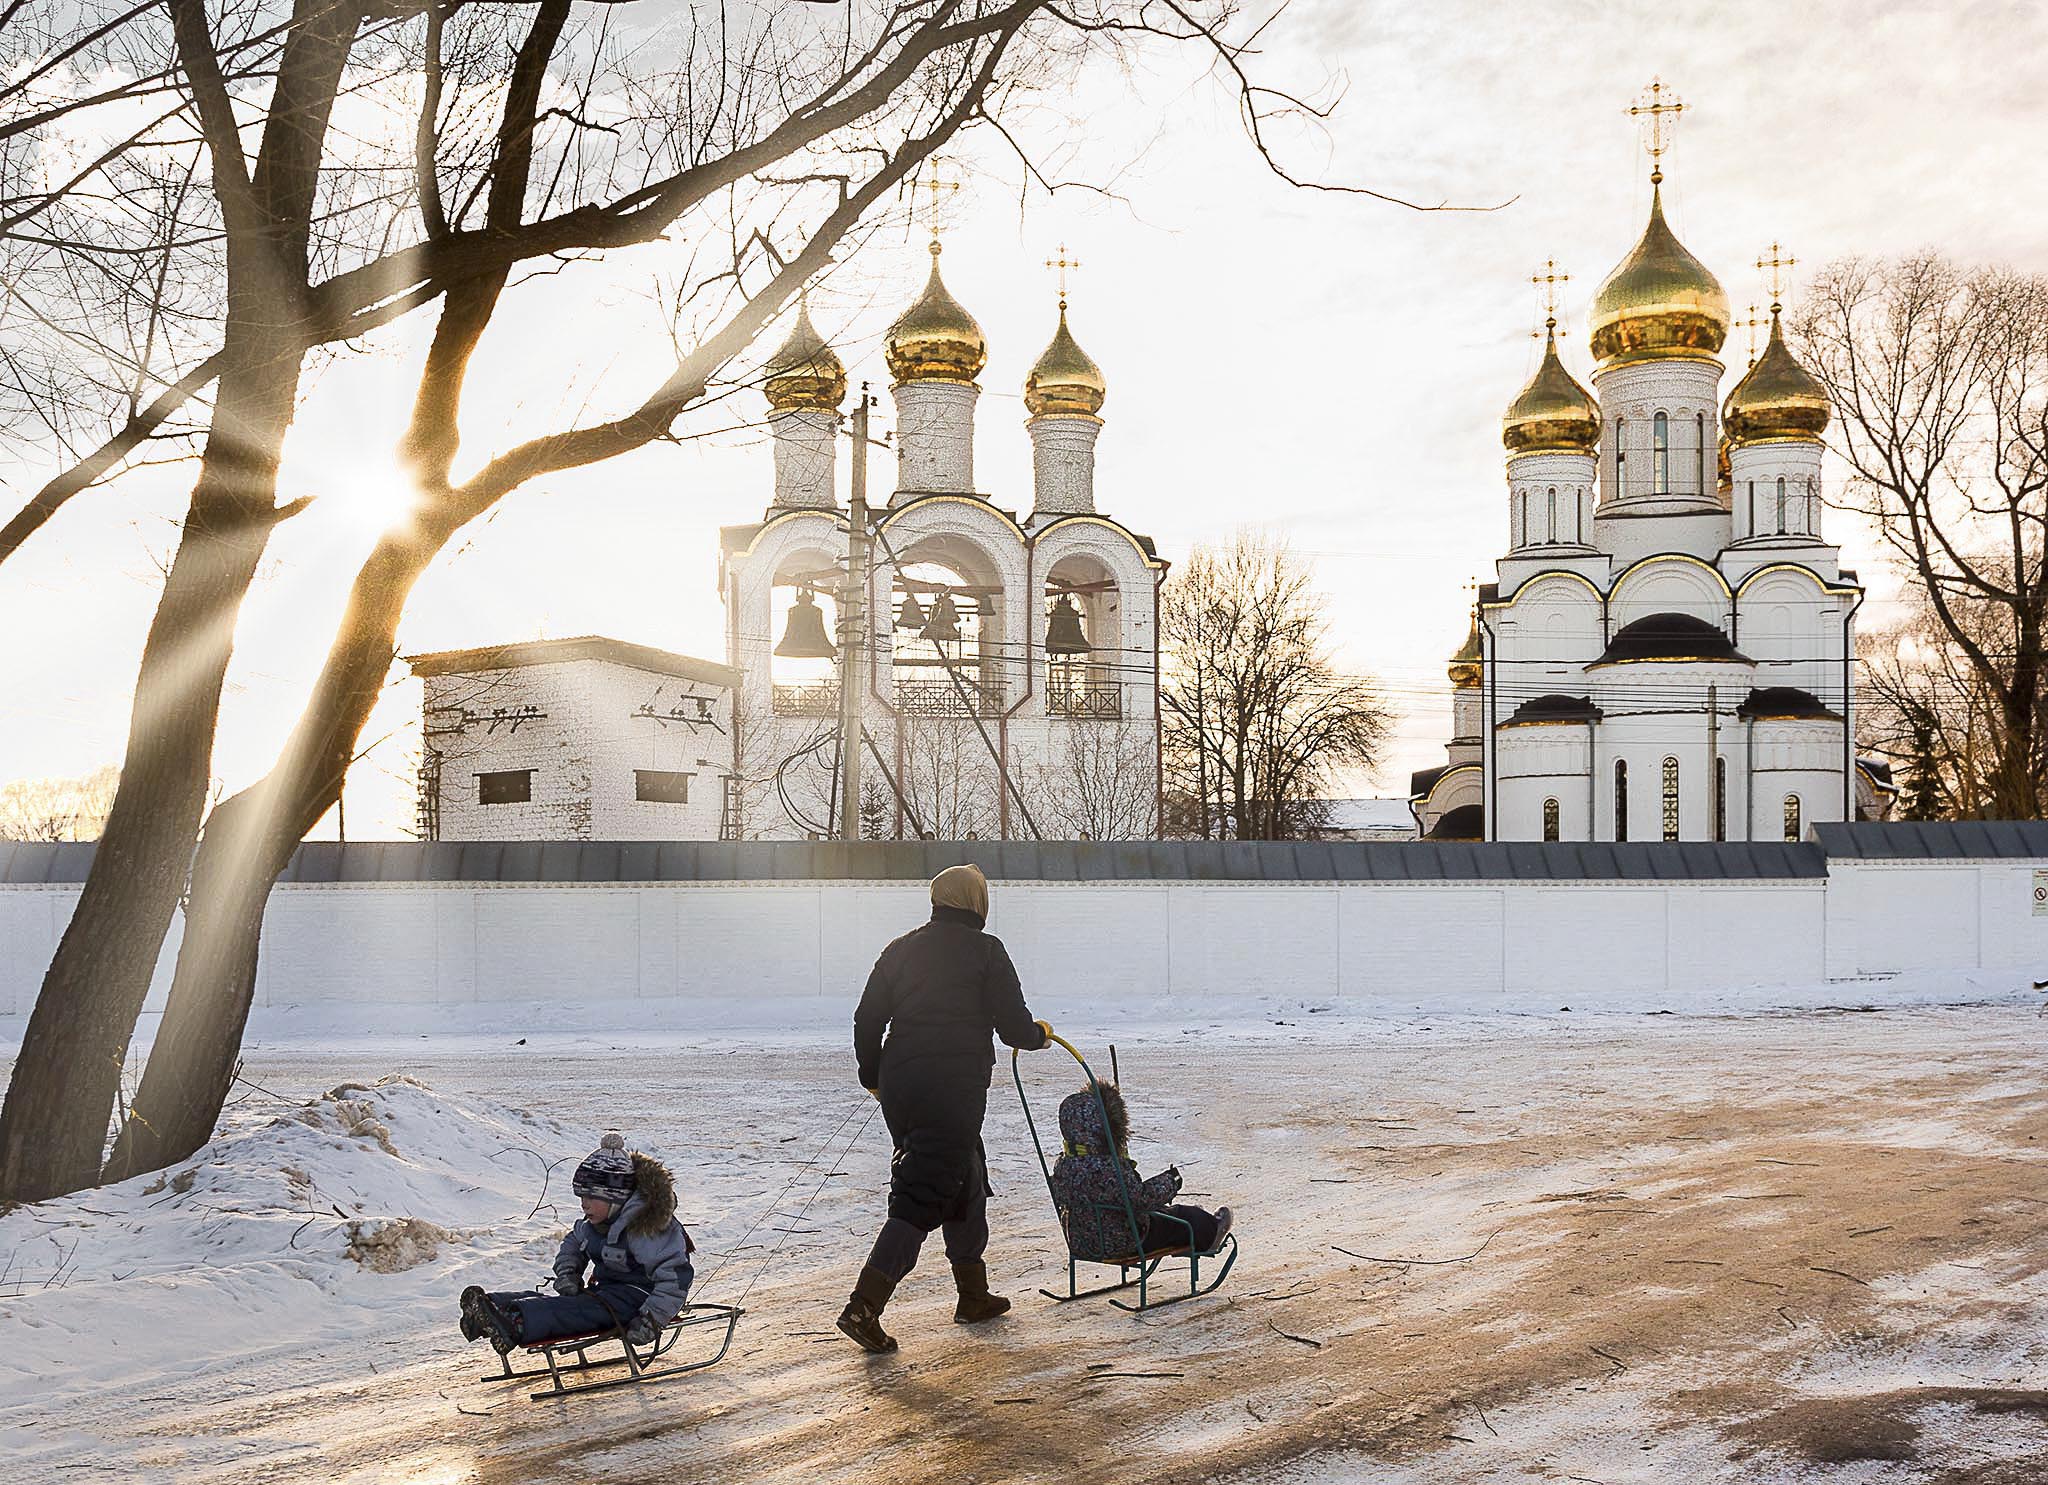 Переславль-Залесский вошел в топ-3 популярных автобусных направлений зимы